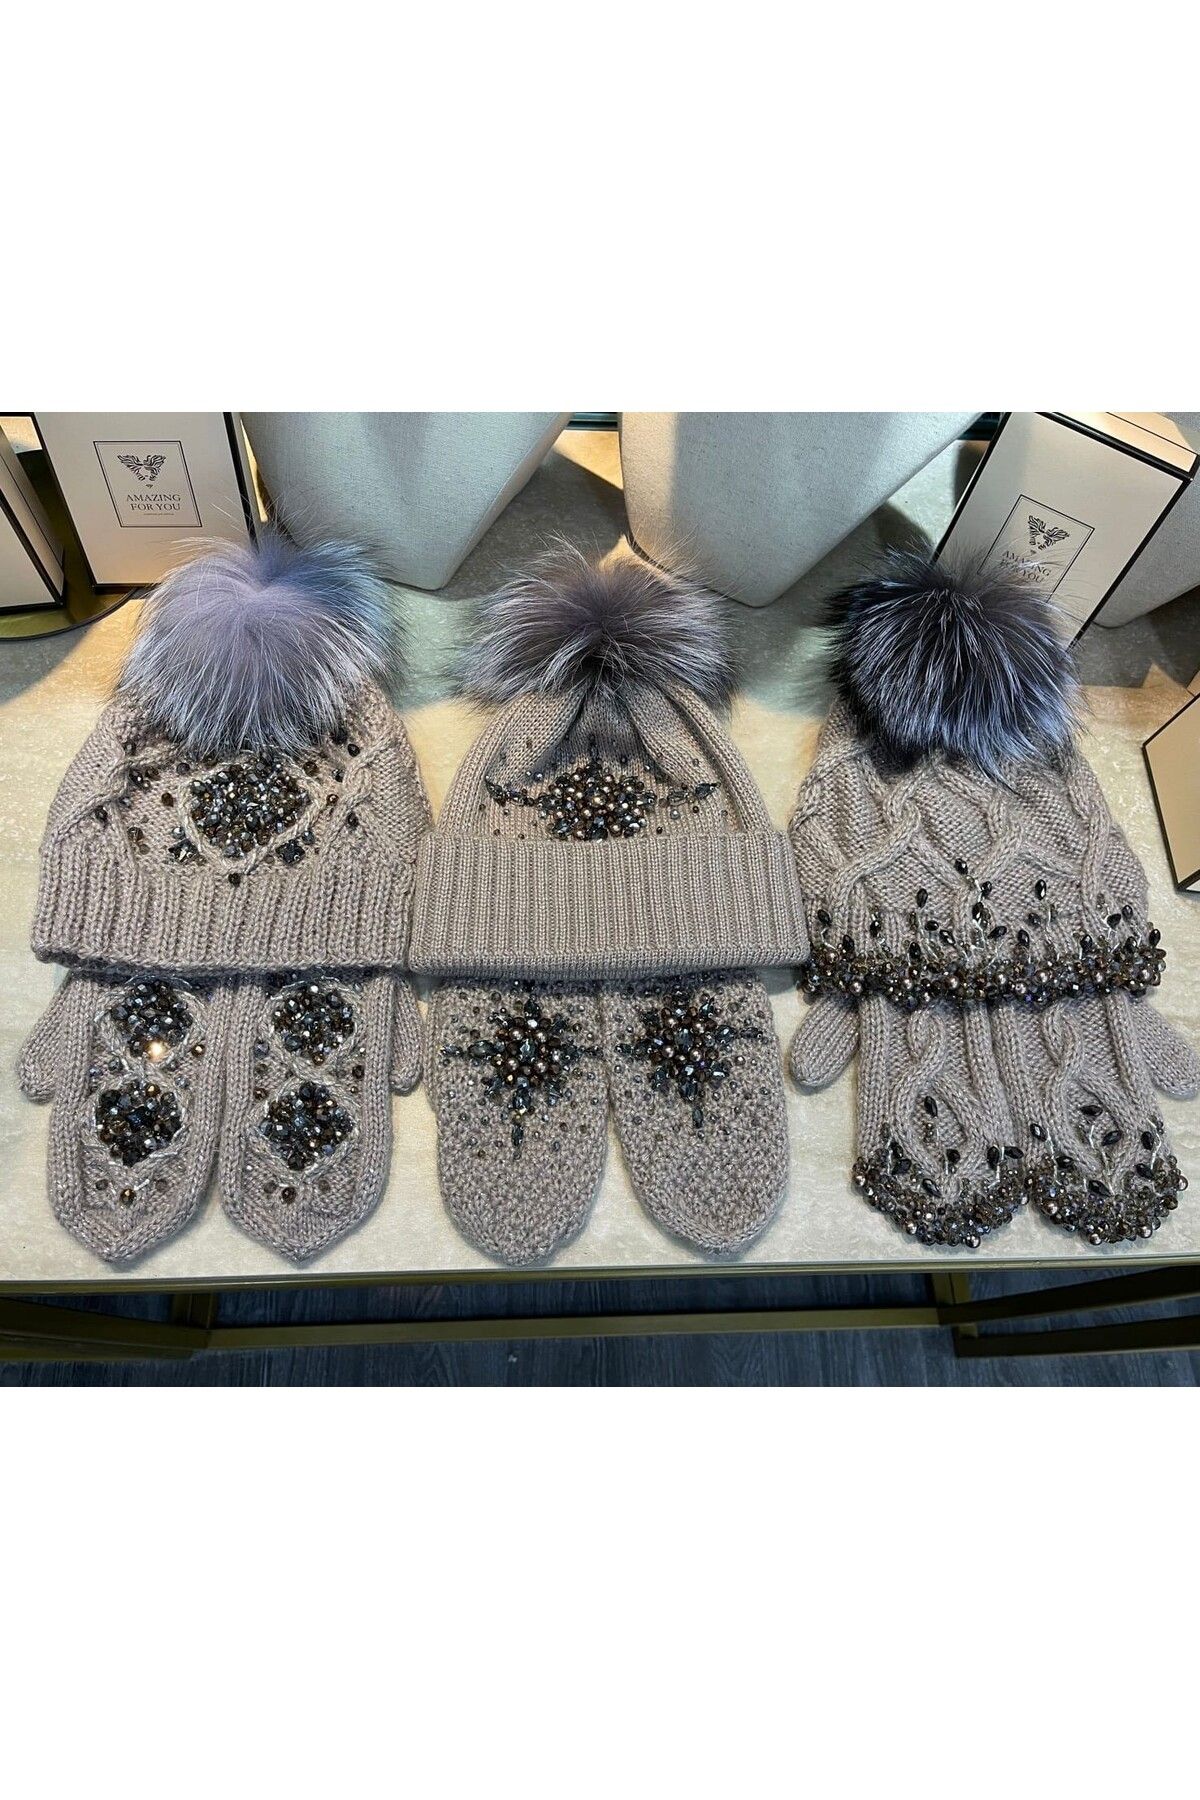 KANGURUCUK Şık Ponponlu Kristal Taşlı Kışlık Kadın Bere ( Şapka ) Eldiven Takımı